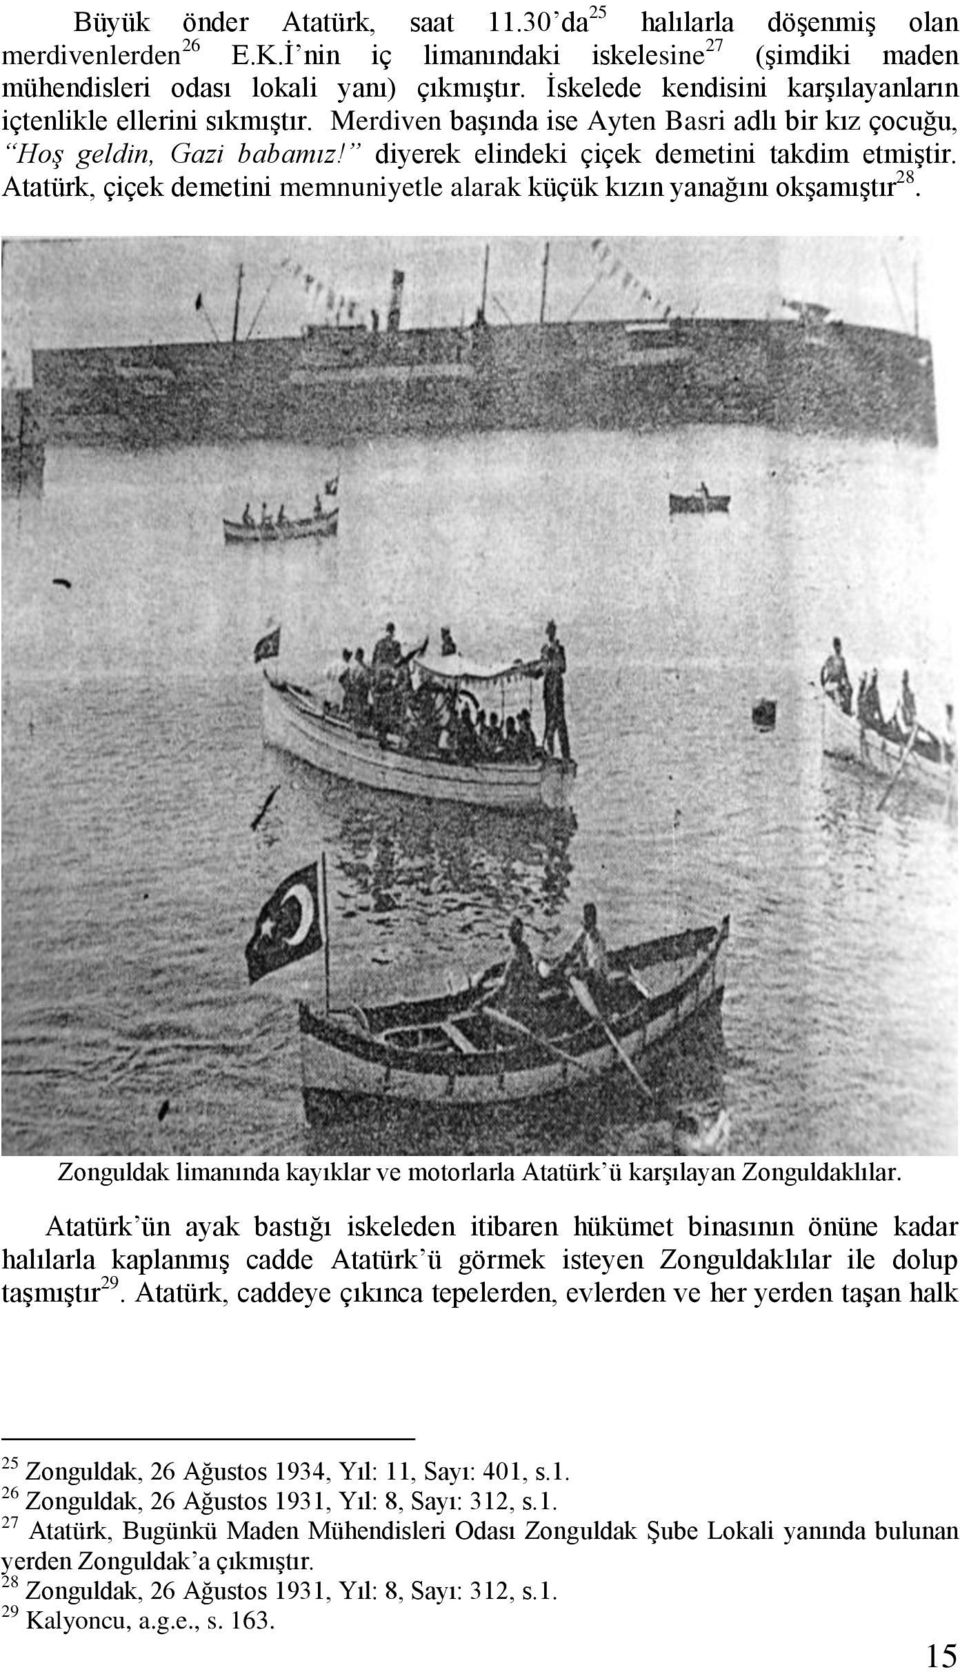 Atatürk, çiçek demetini memnuniyetle alarak küçük kızın yanağını okşamıştır 28. Zonguldak limanında kayıklar ve motorlarla Atatürk ü karşılayan Zonguldaklılar.